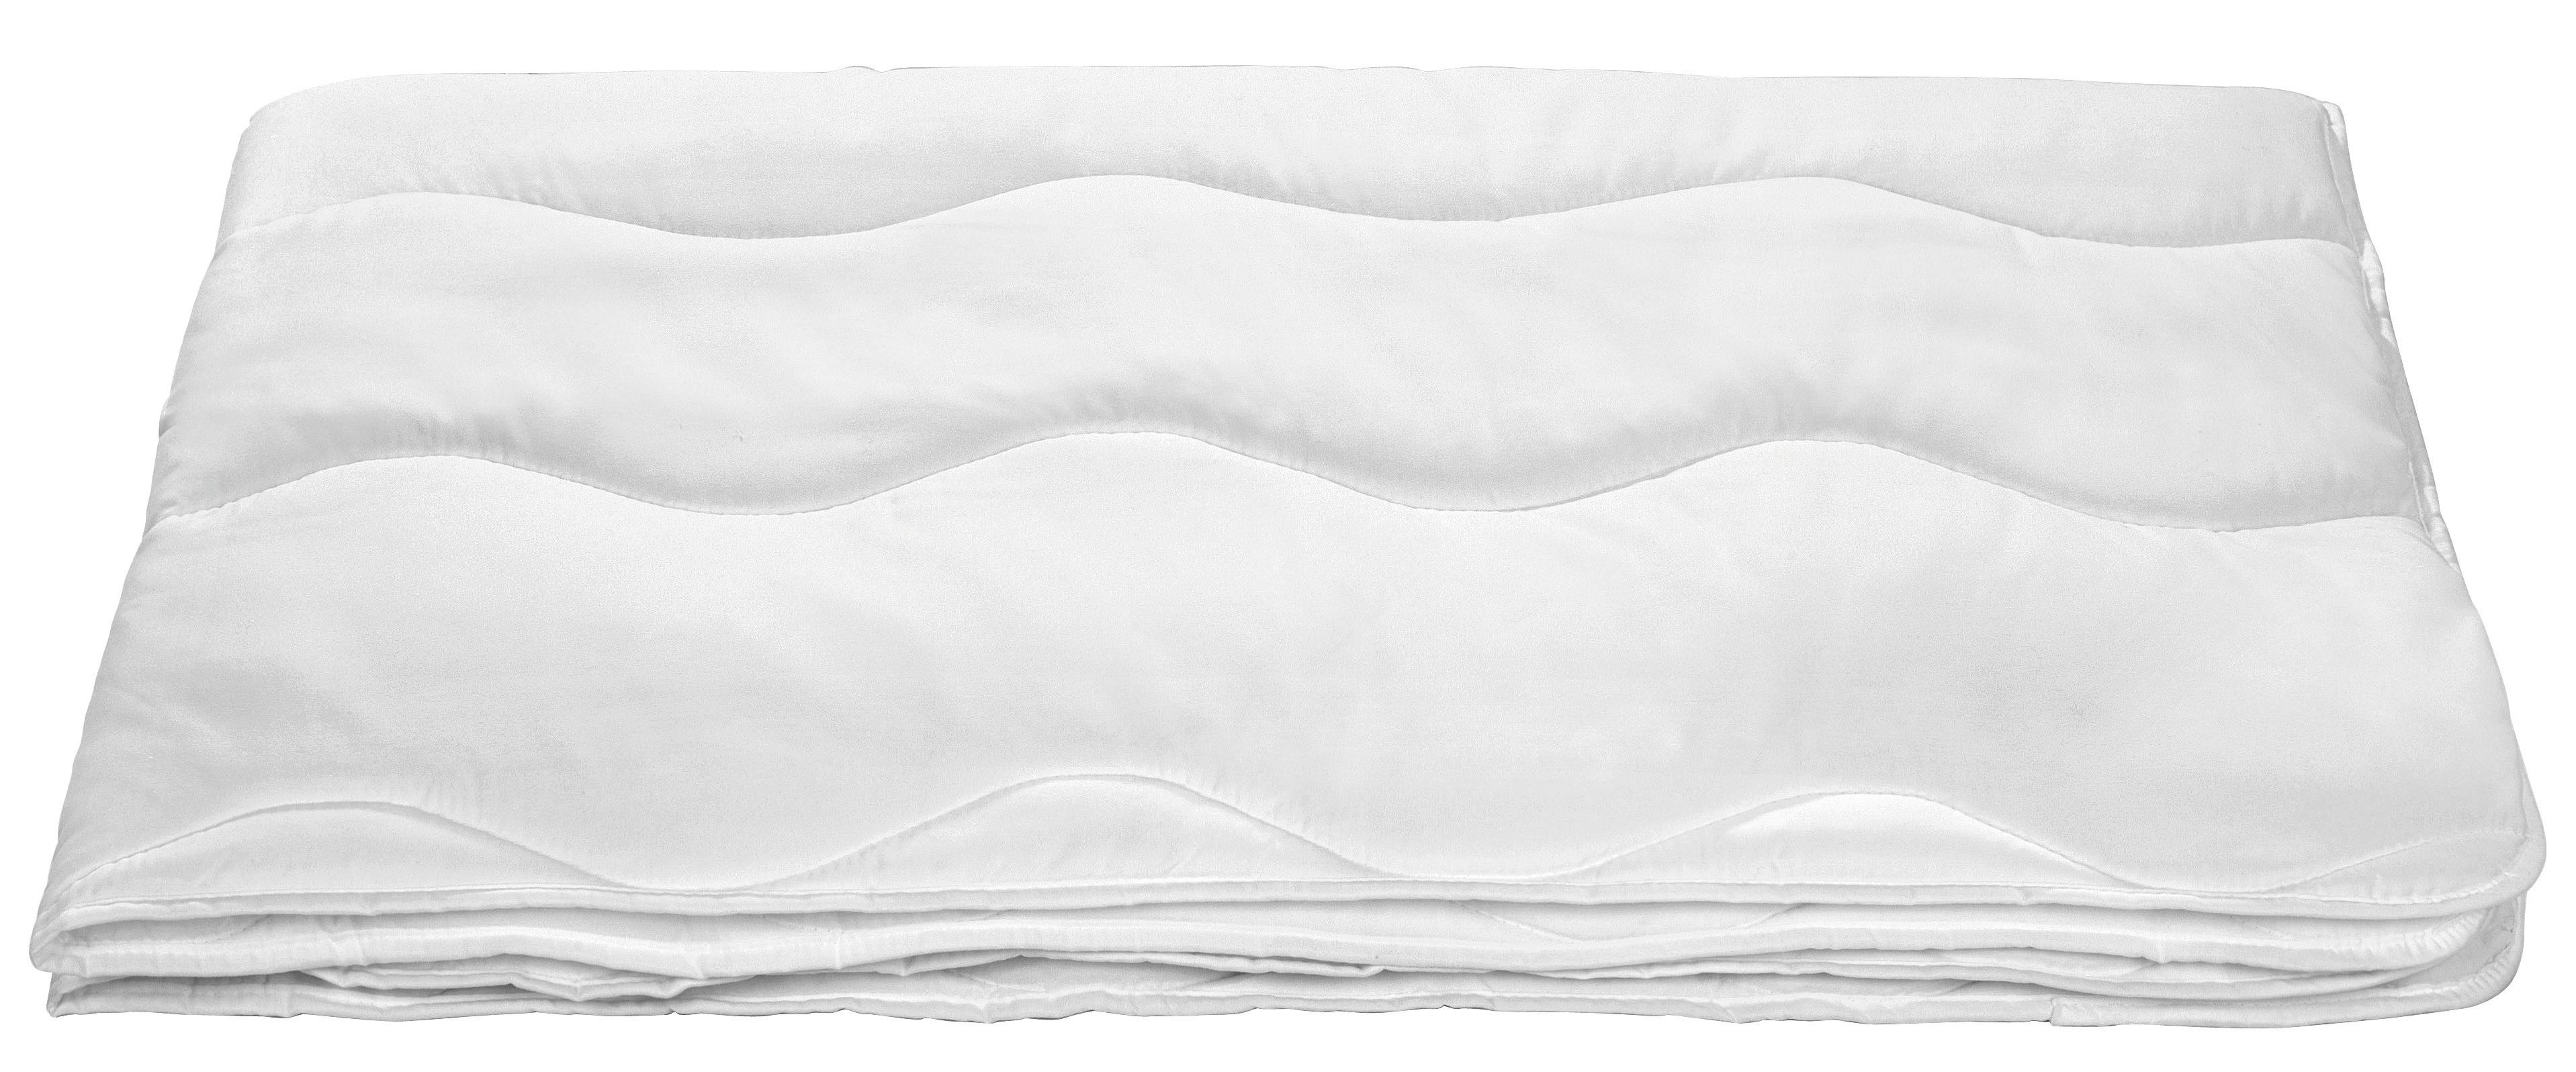 Steppdecke Linda Leicht 140x200 cm, Waschbar 60° - Weiß, KONVENTIONELL, Textil (140/200cm) - Primatex